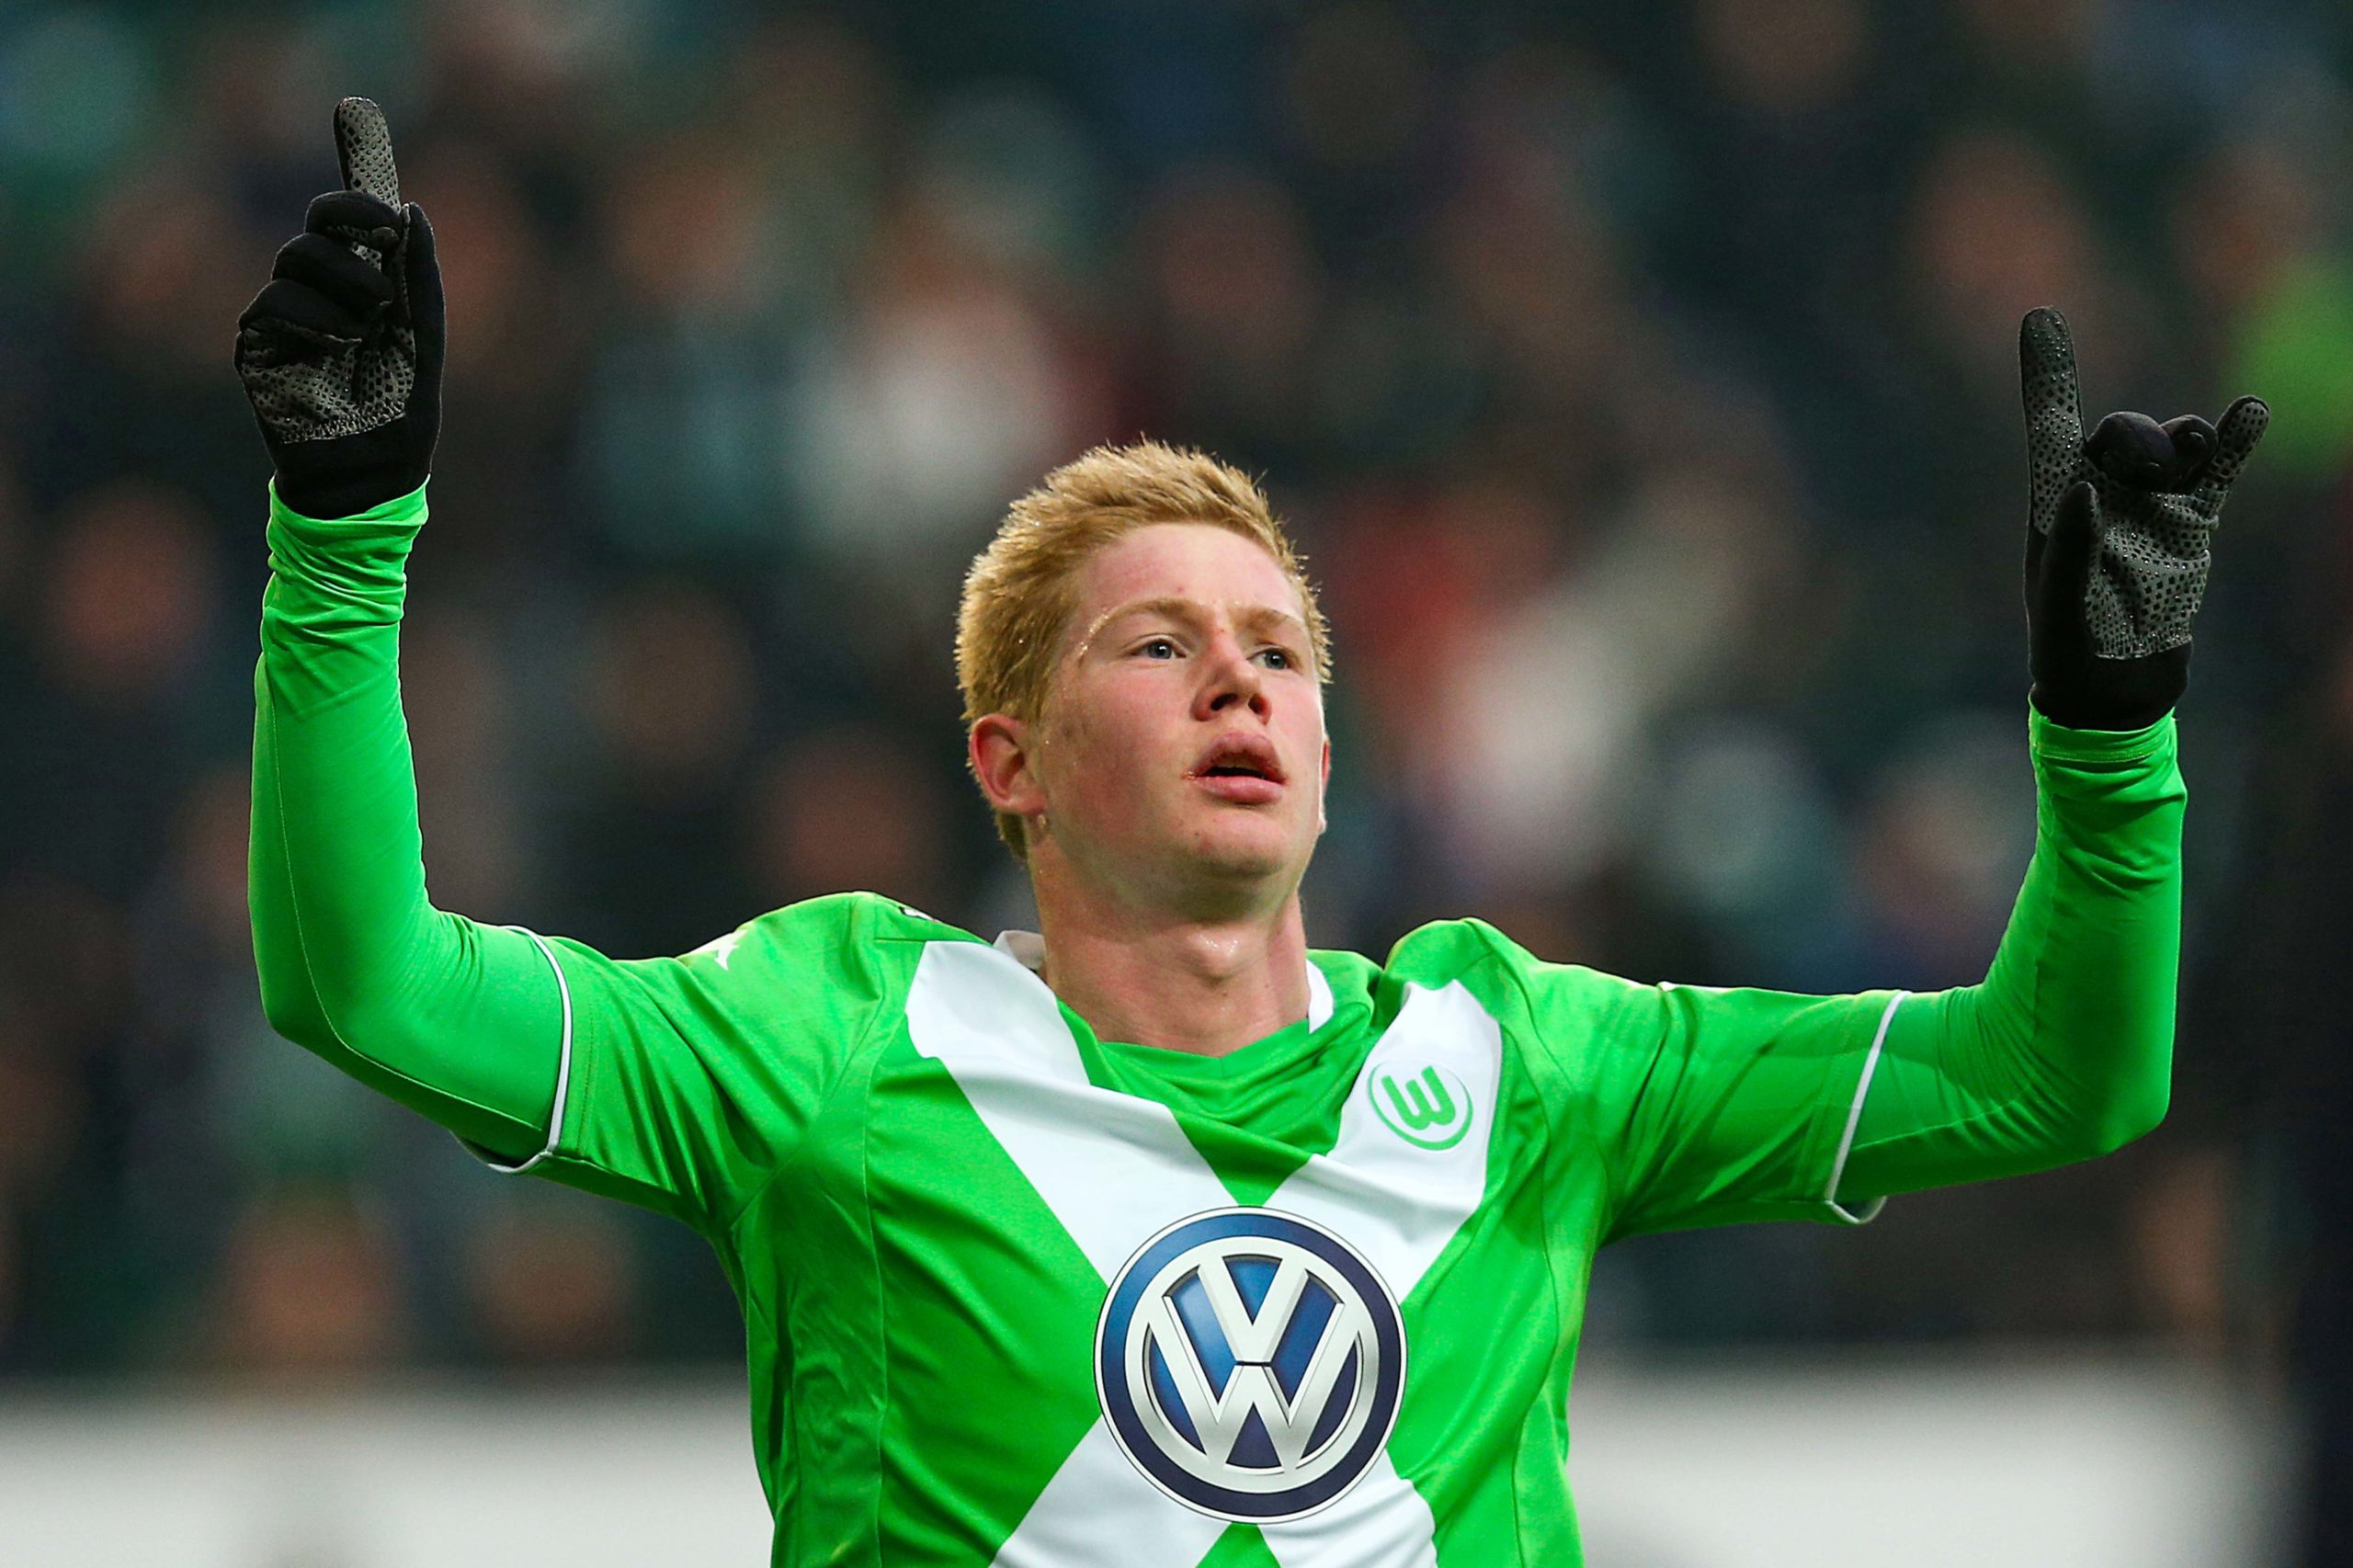 Kevin De Bruyne trong màu áo Wolfsburg (ảnh: Internet)